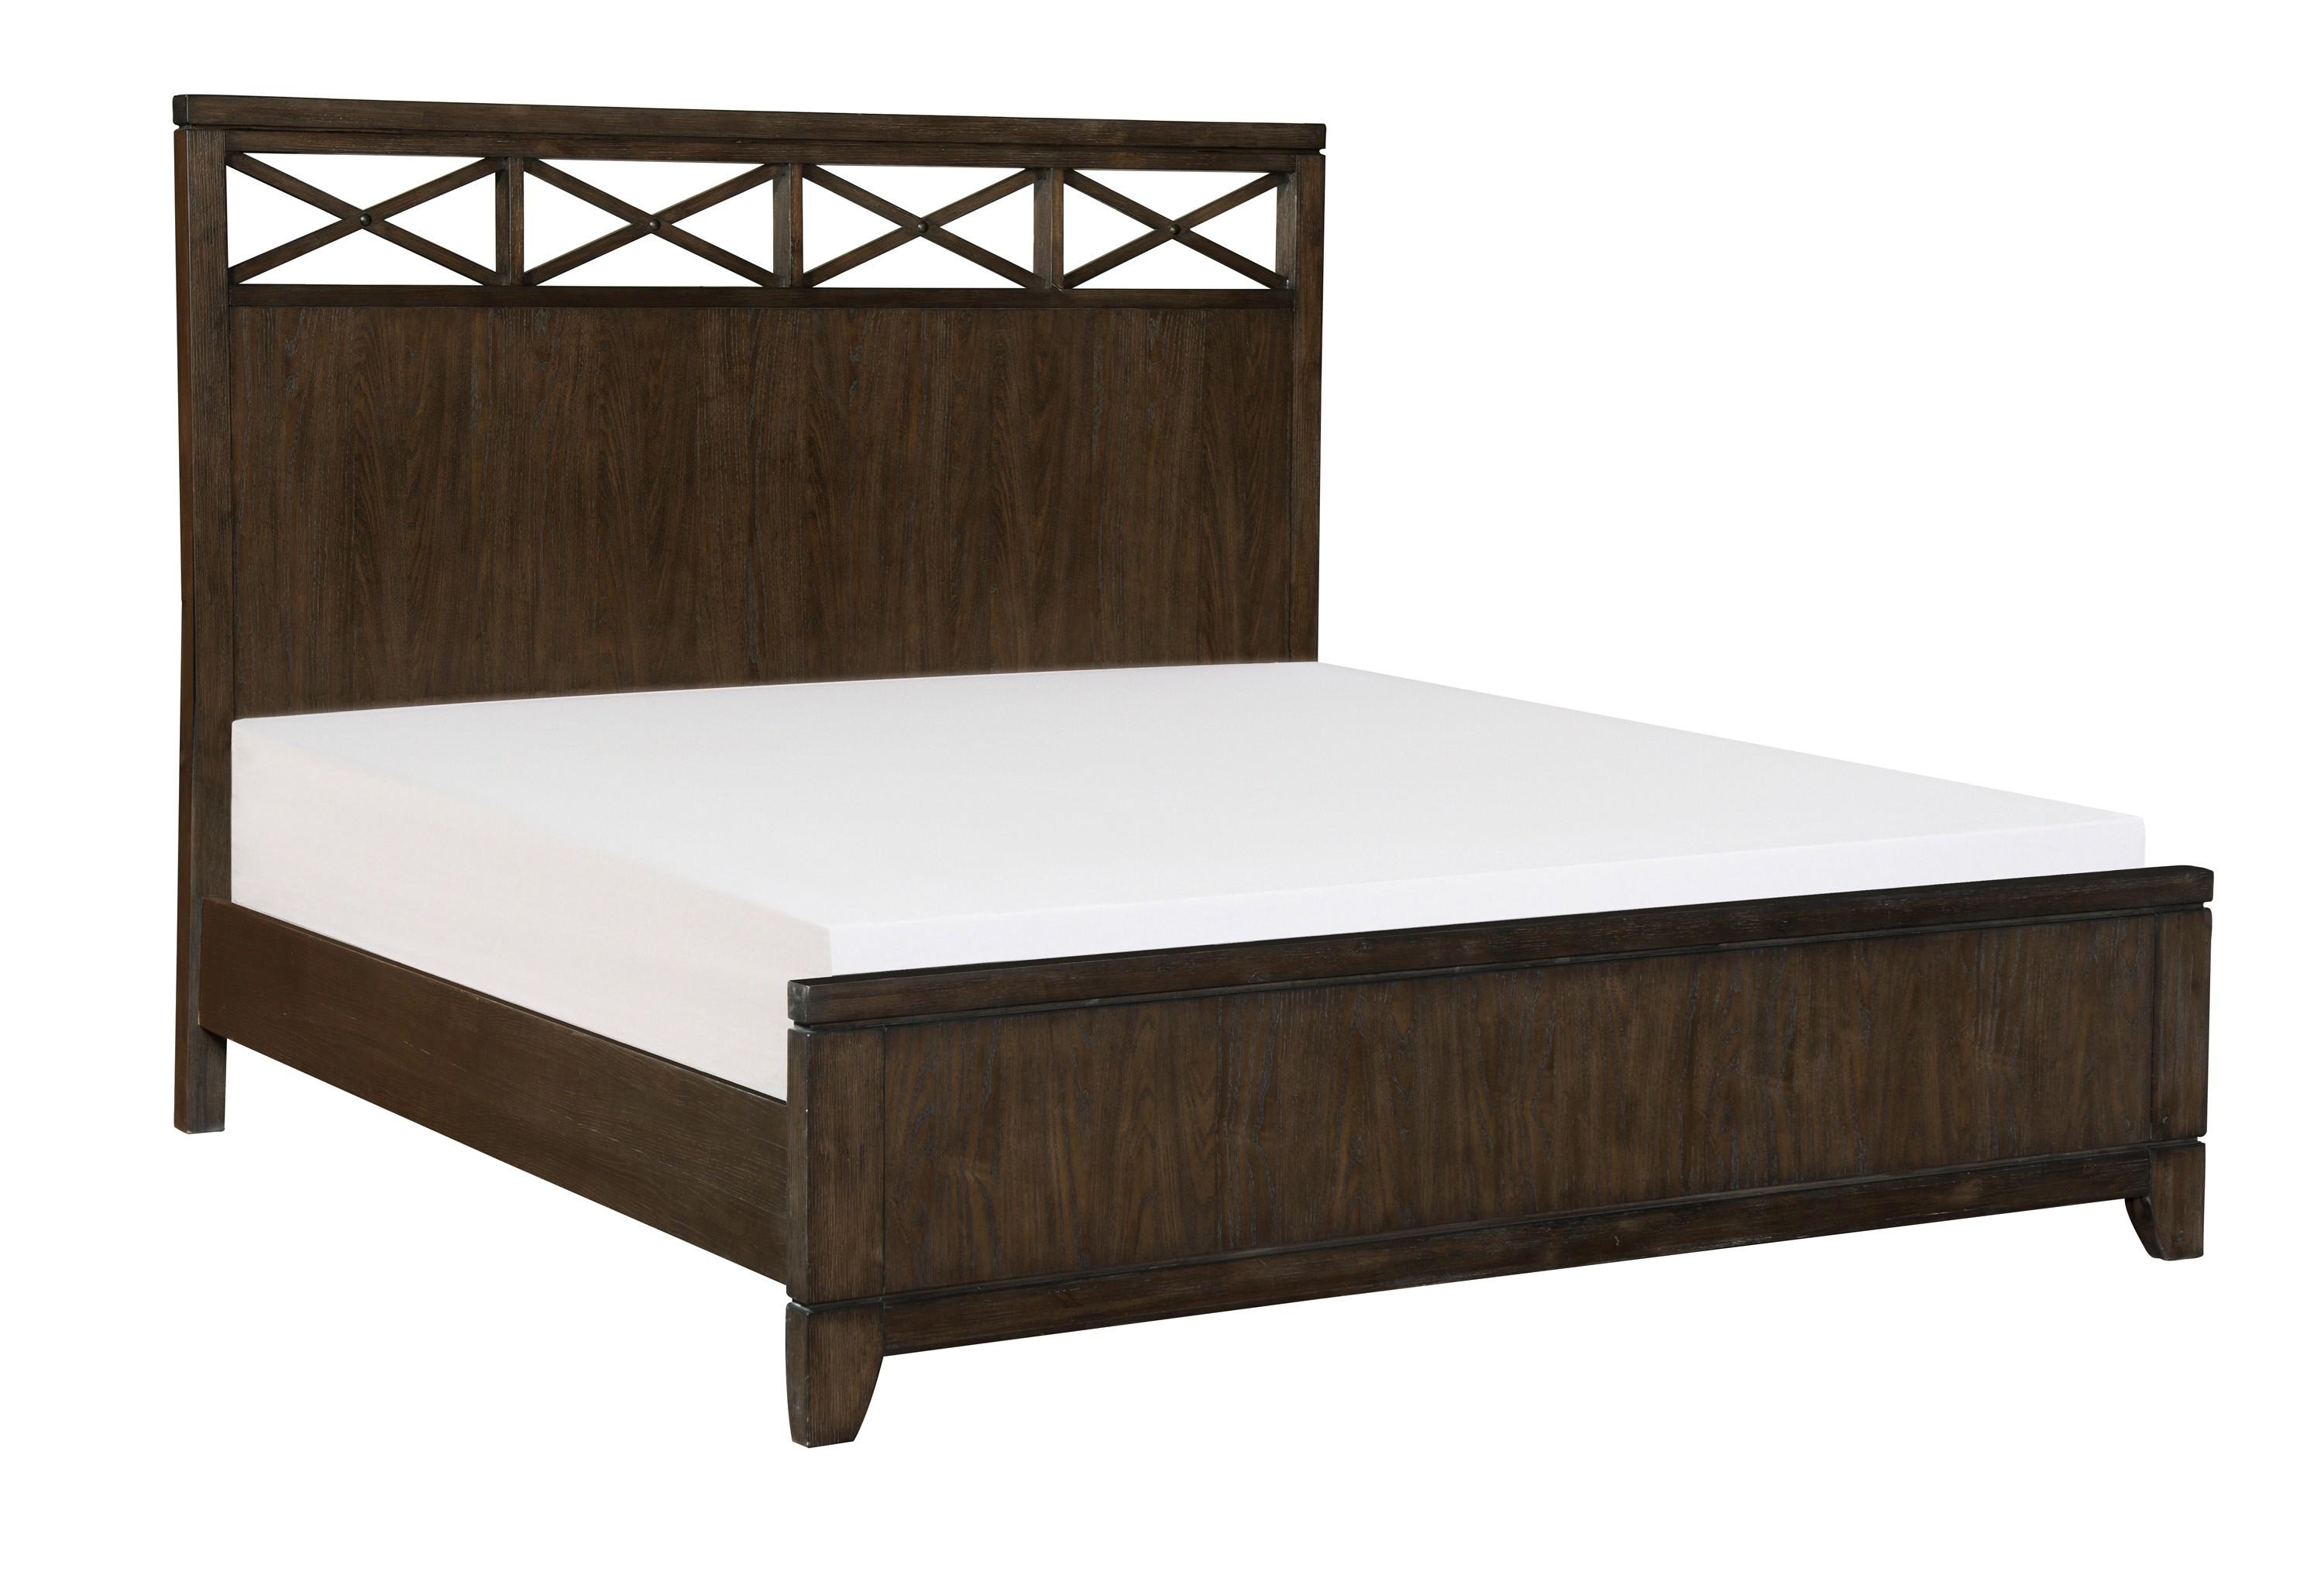 

    
Contemporary Dark Brown Wood King Bedroom Set 3pcs Homelegance 1669K-1EK* Griggs
